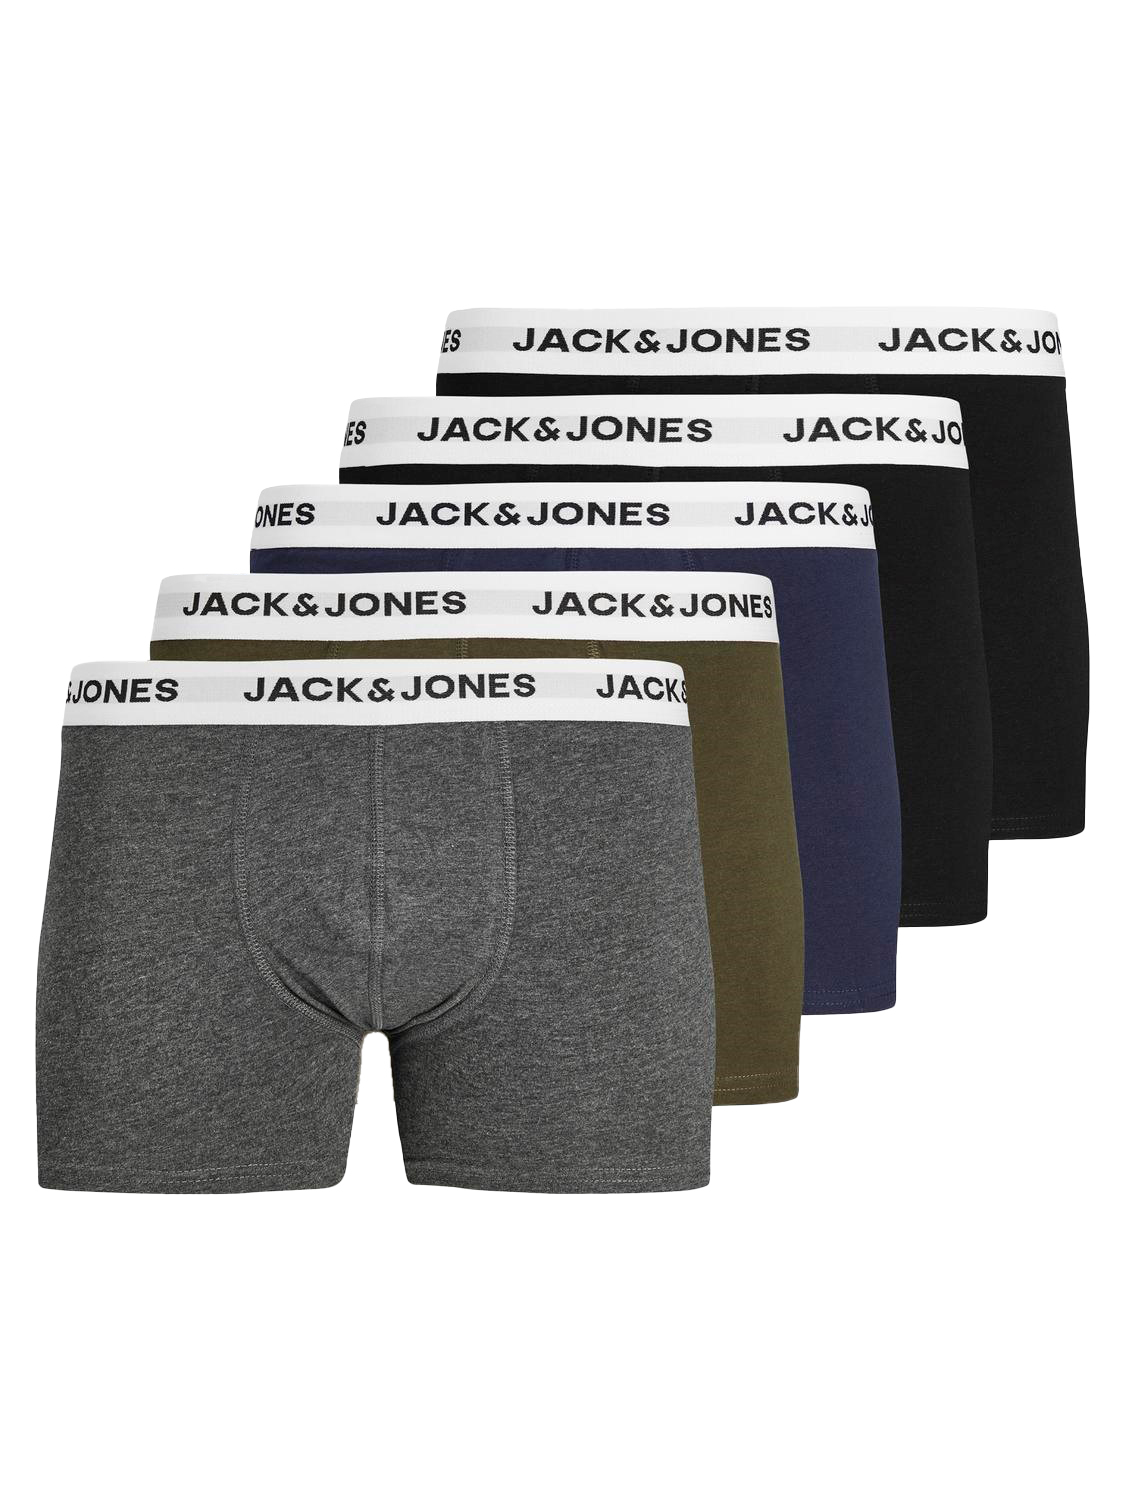 JACK & JONES Jacbasic trunks (5-pack), heren boxers normale lengte, groen, blauw, grijs en zwart